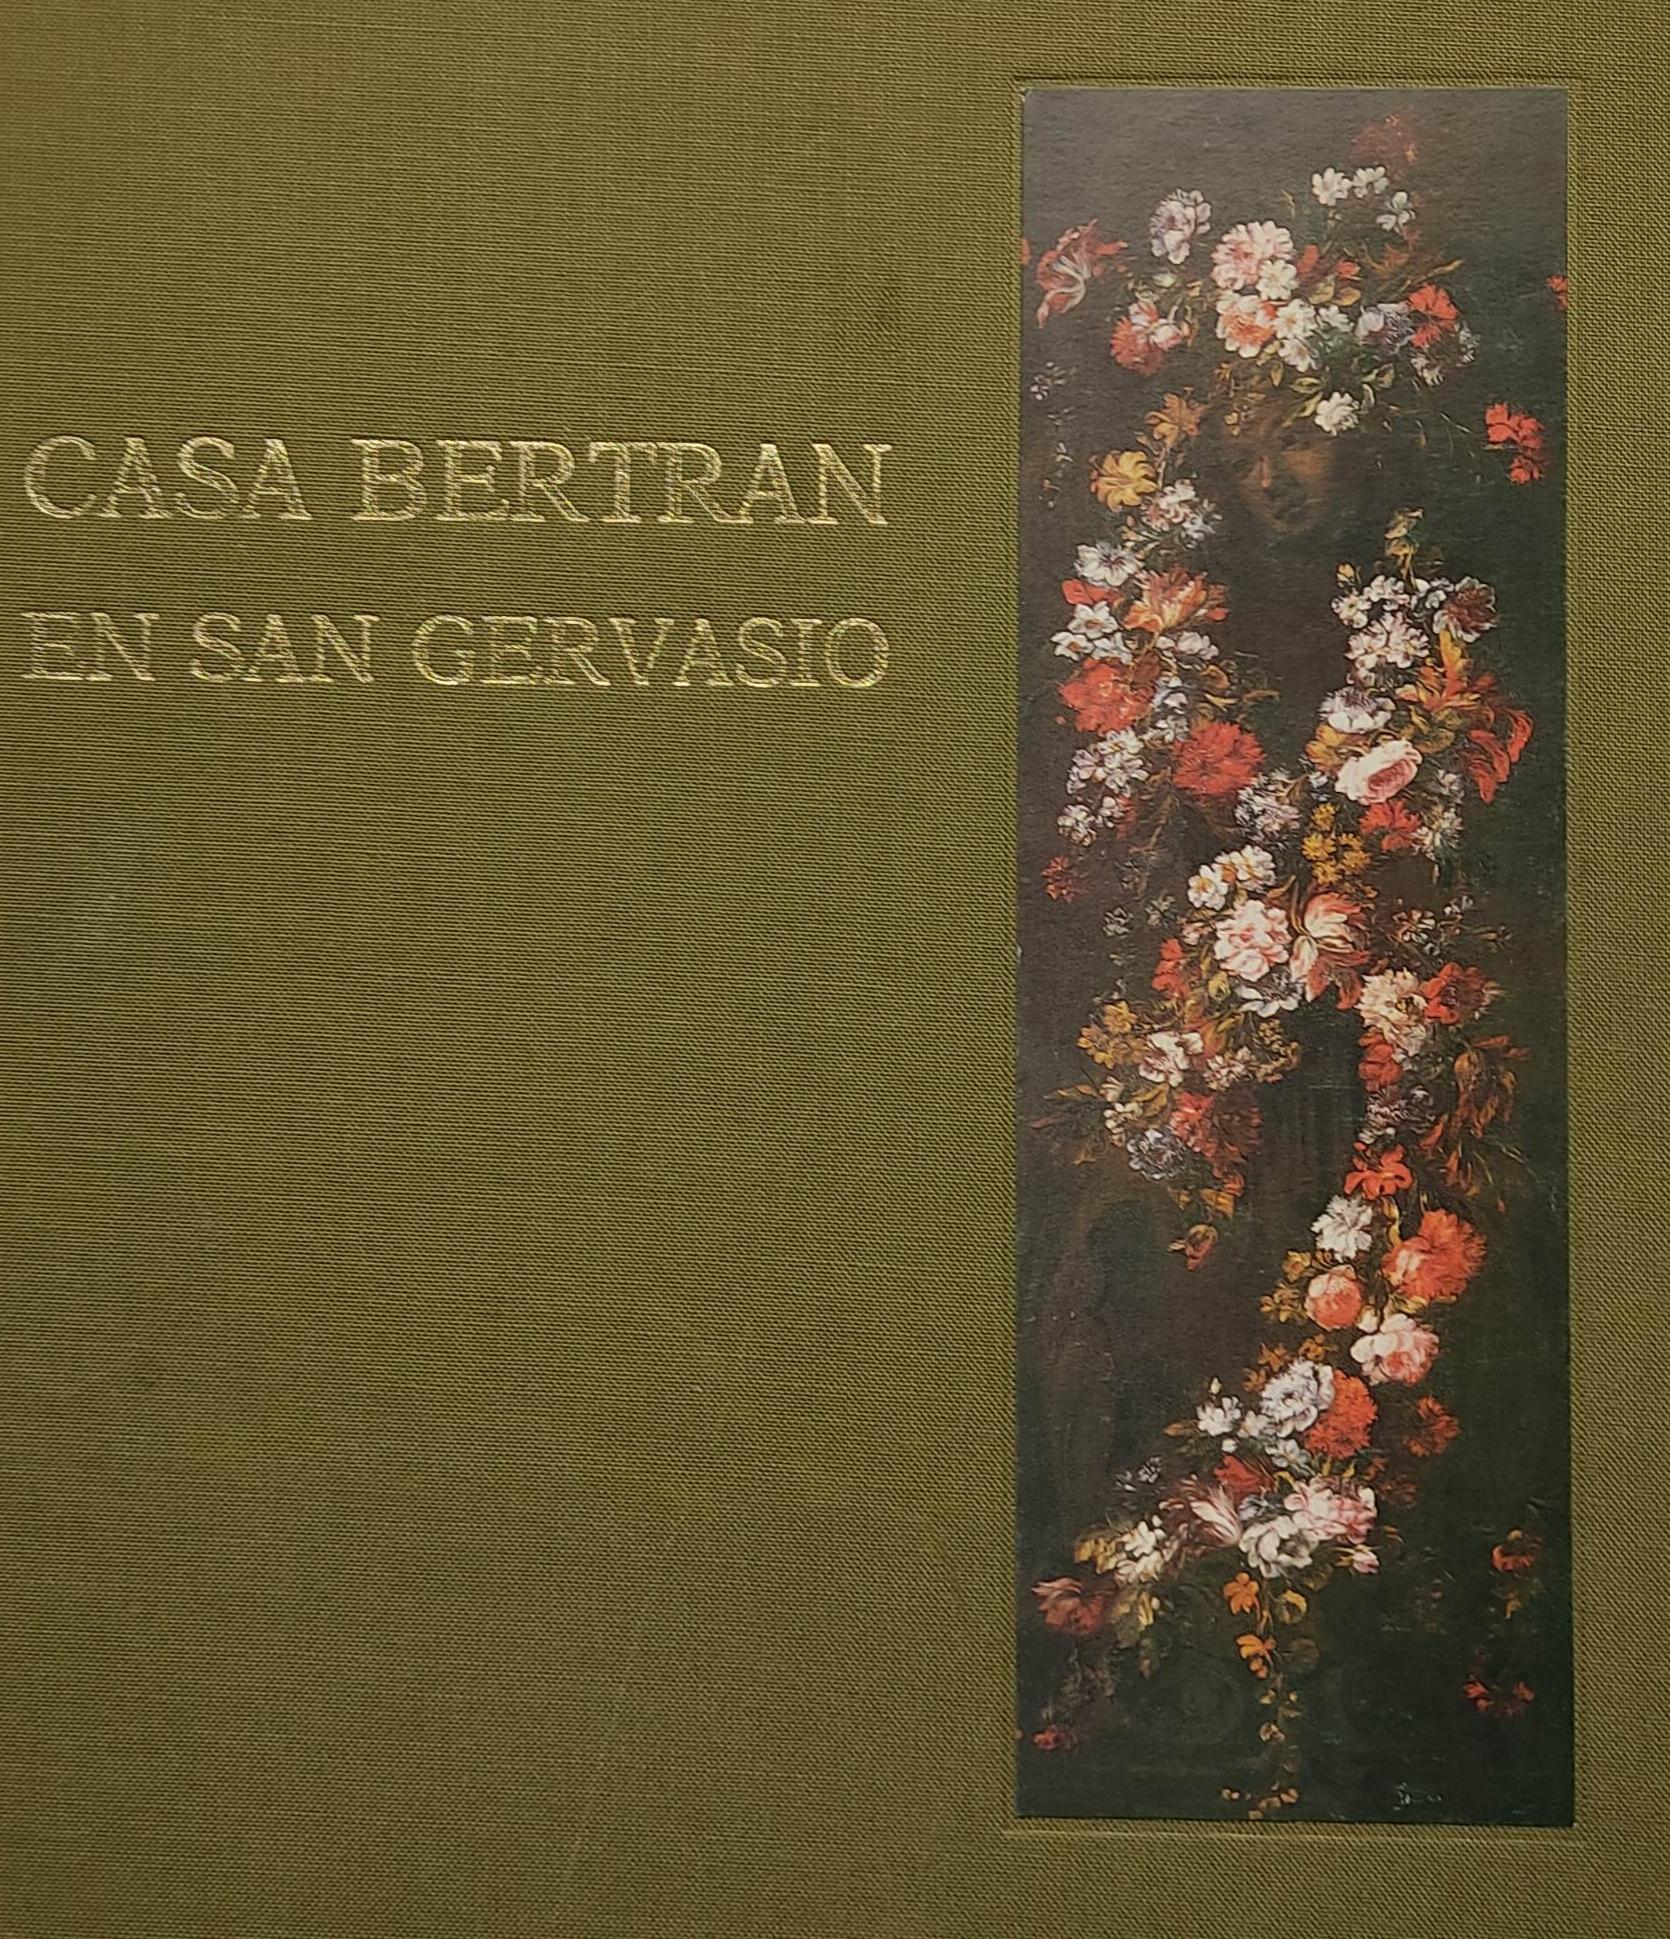 CASA BERTRÁN EN SAN GERVASIO. 